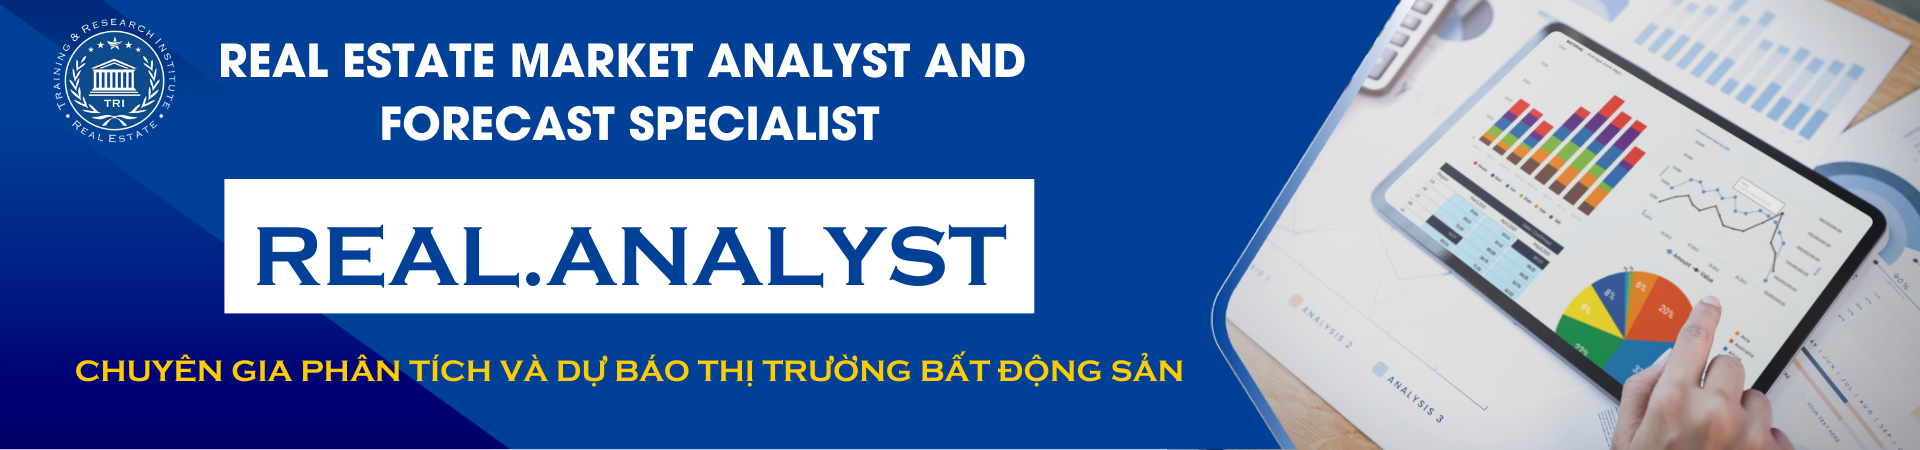 Real Analyst Chuyen Gia Phan Tich Va Du Bao Thi Truong Bat Dong San